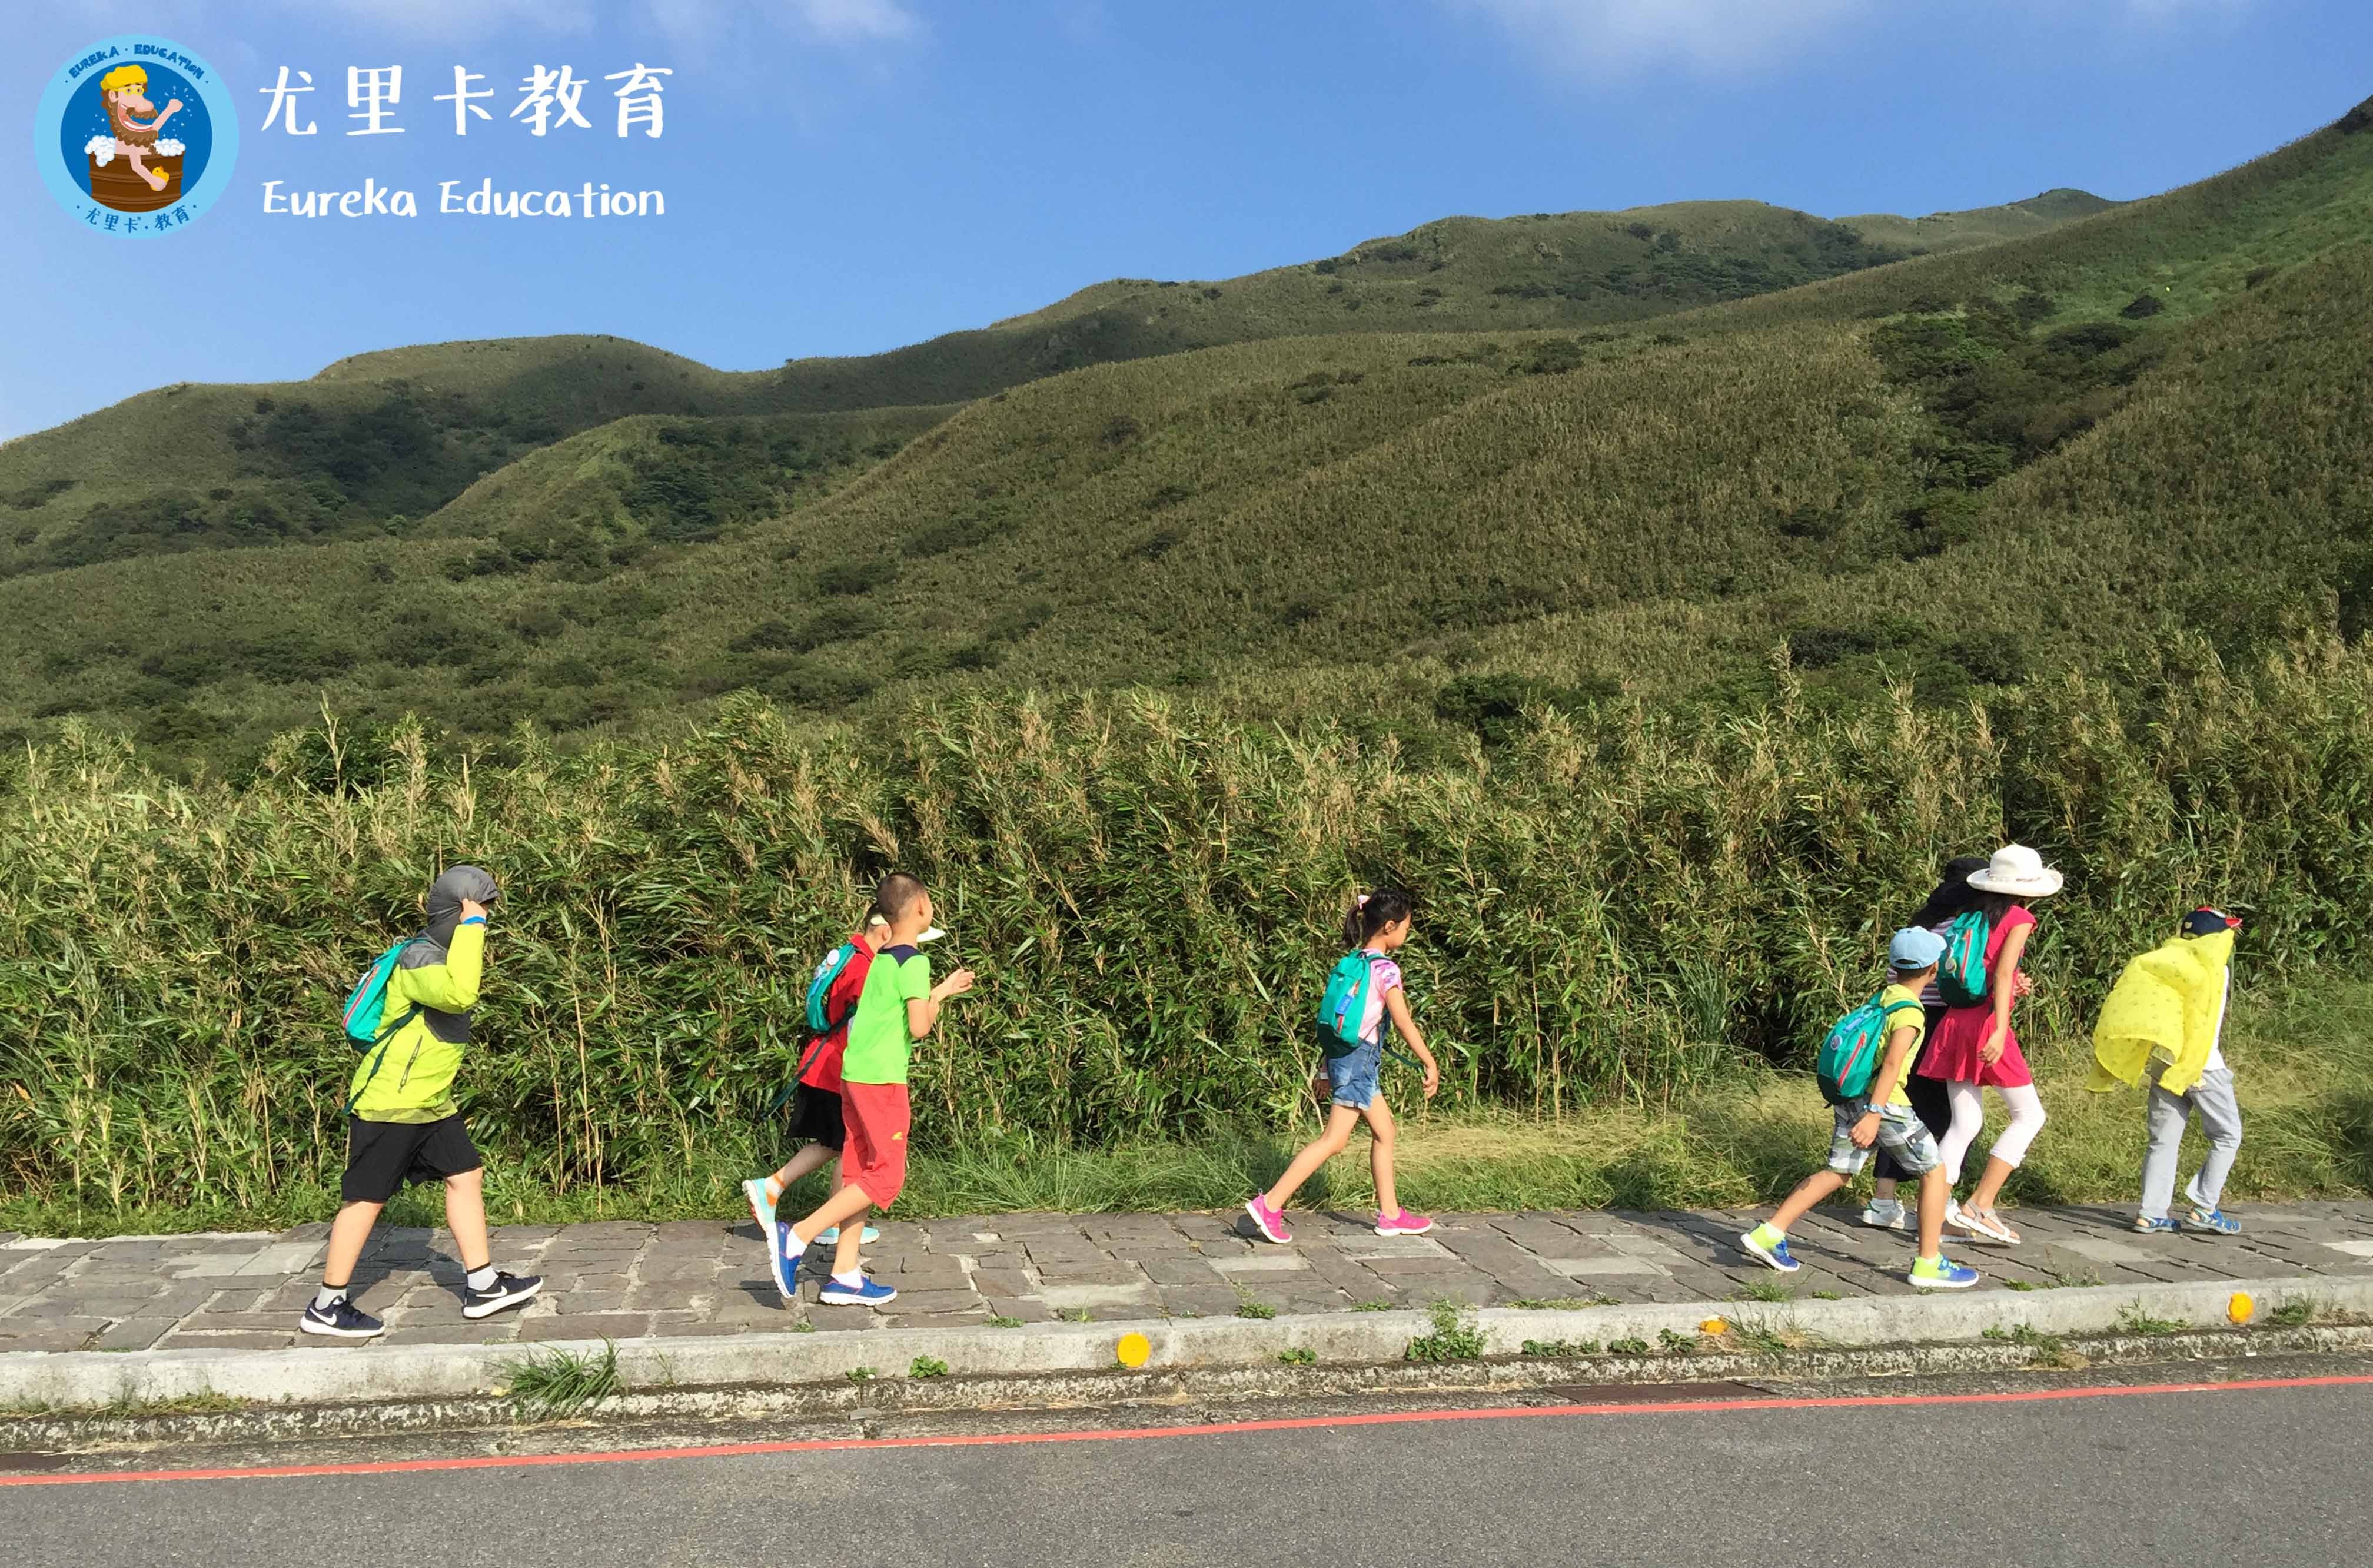 【2019寒假】台湾游学:课本外的台湾(一大一小